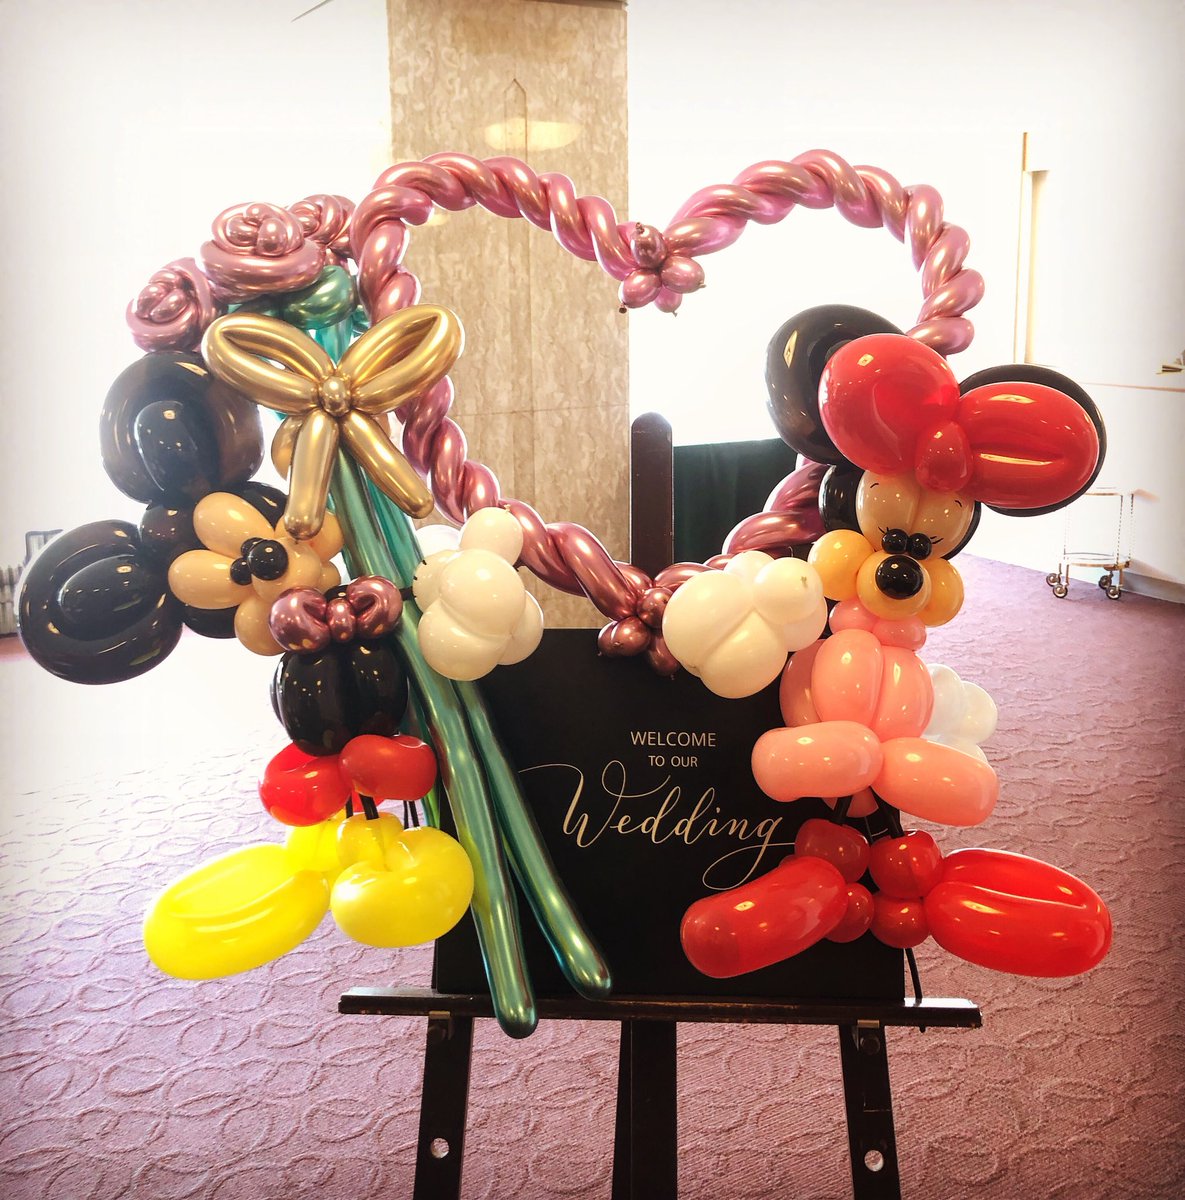 バルーンパフォーマーyohei در توییتر 結婚式のお祝いにバルーンアートのミッキー ミニー 早朝早起きで製作でした おめでとうございます ホテルコンコルド浜松 ミッキー ミニー 結婚式 お祝い Mickeymouse ディズニー Disney バルーンアート